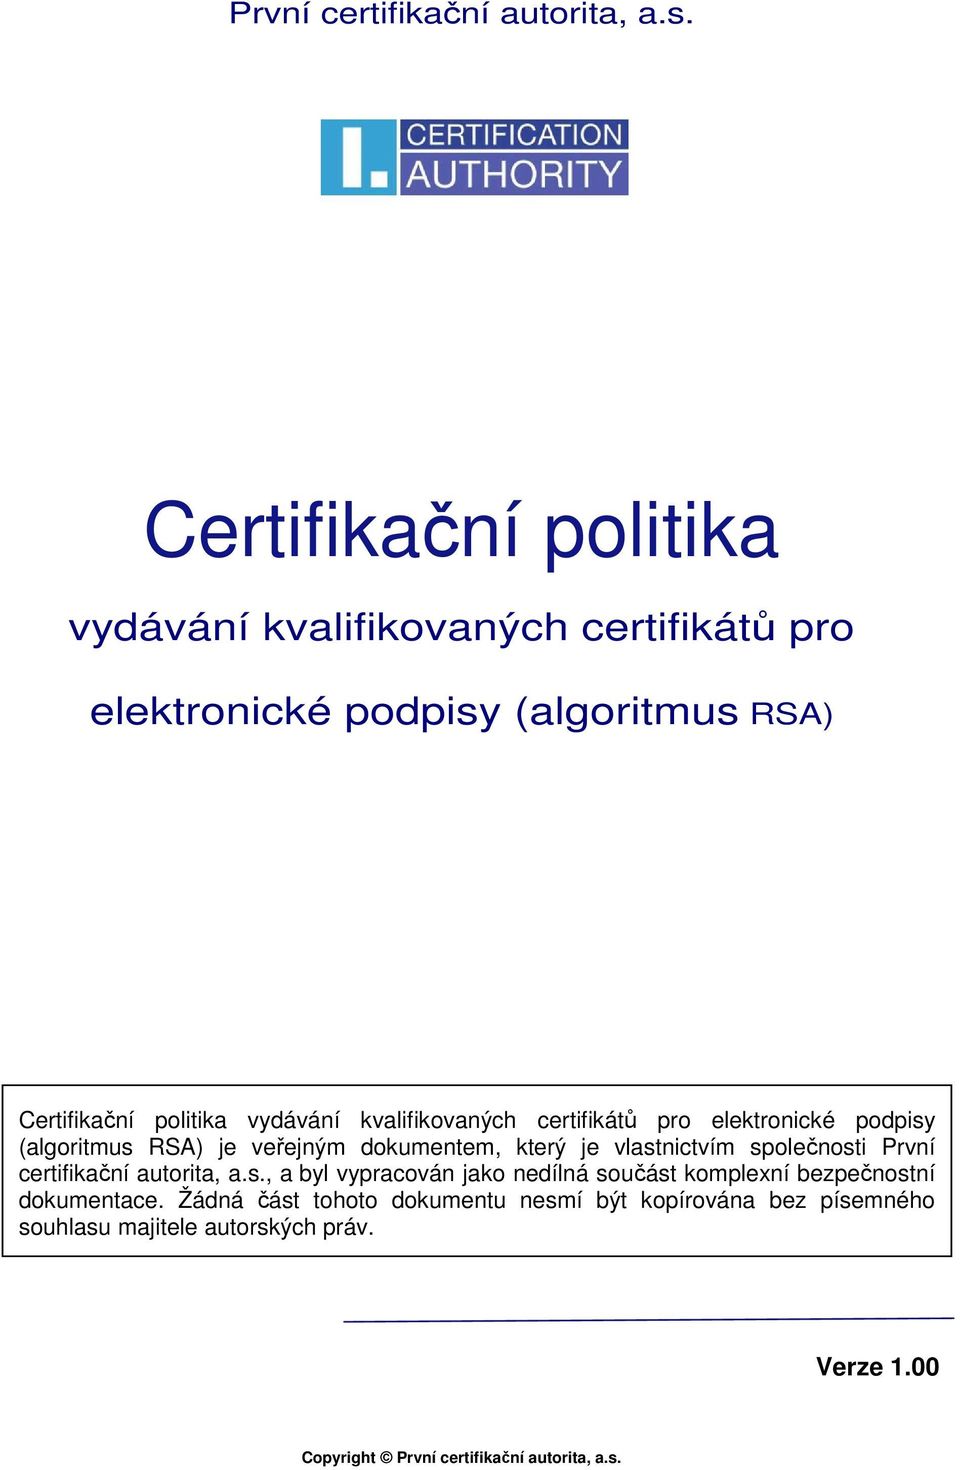 kvalifikovaných certifikátů pro elektronické podpisy (algoritmus RSA) je veřejným dokumentem, který je vlastnictvím společnosti , a byl